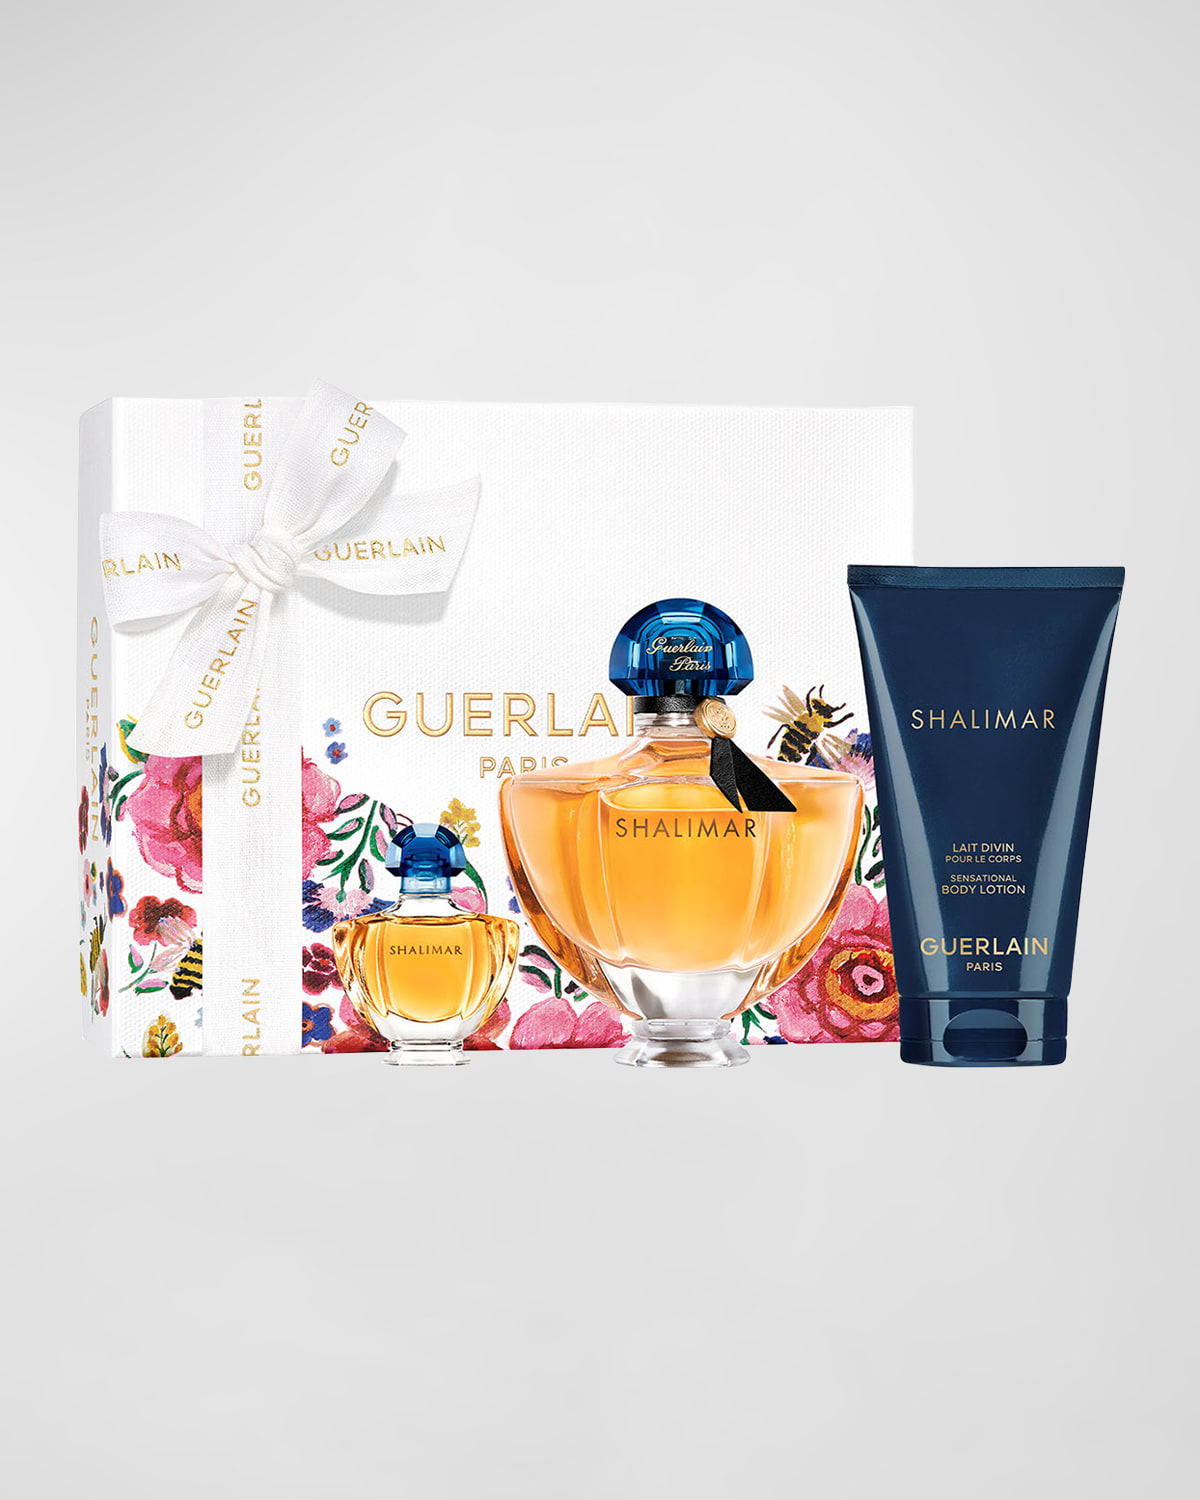 GUERLAIN Limited Edition Shalimar Eau de Parfum Mother's Day Set ($154 Value)